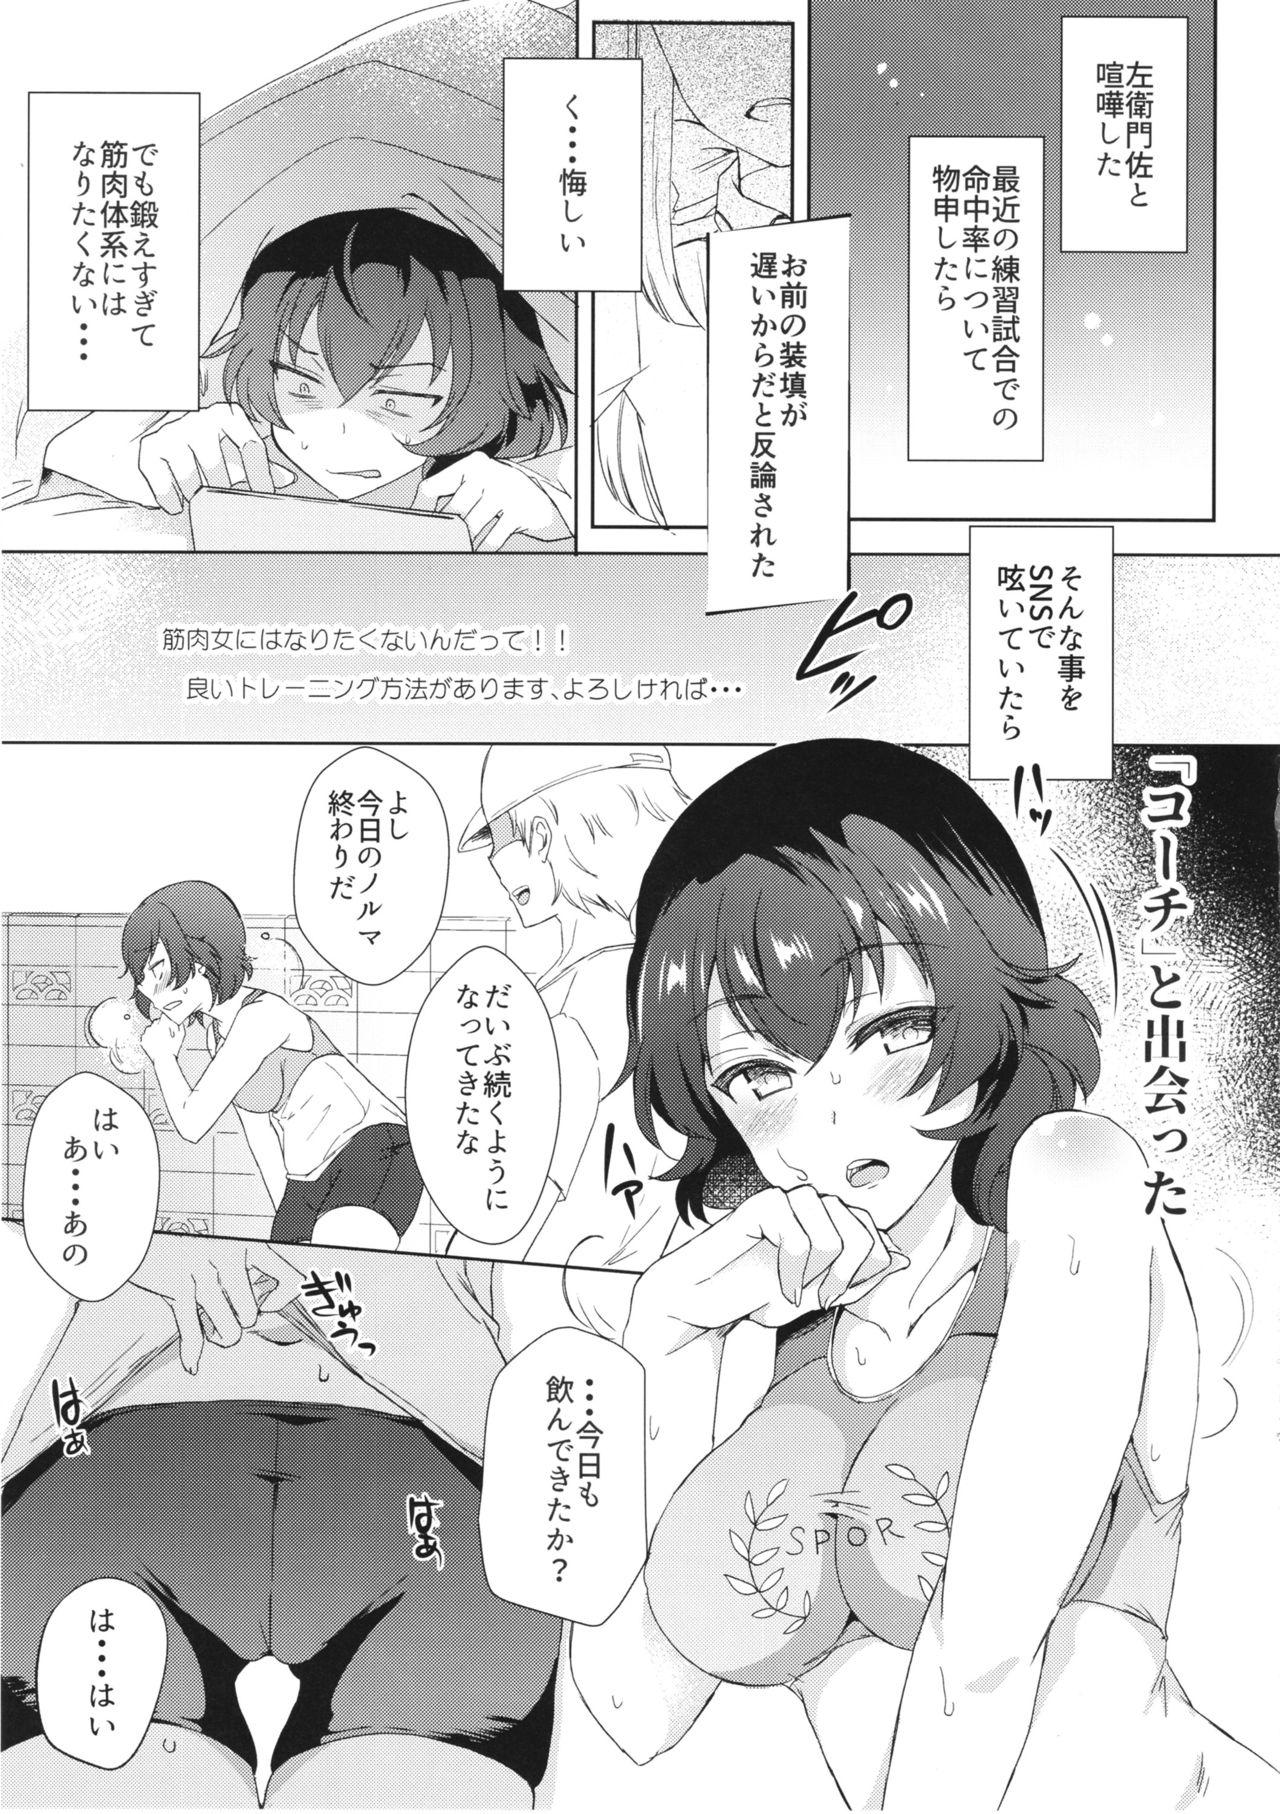 Petite Teen Himitsu o Mamoru wa Otona no Tsutome - Girls und panzer Bear - Page 8